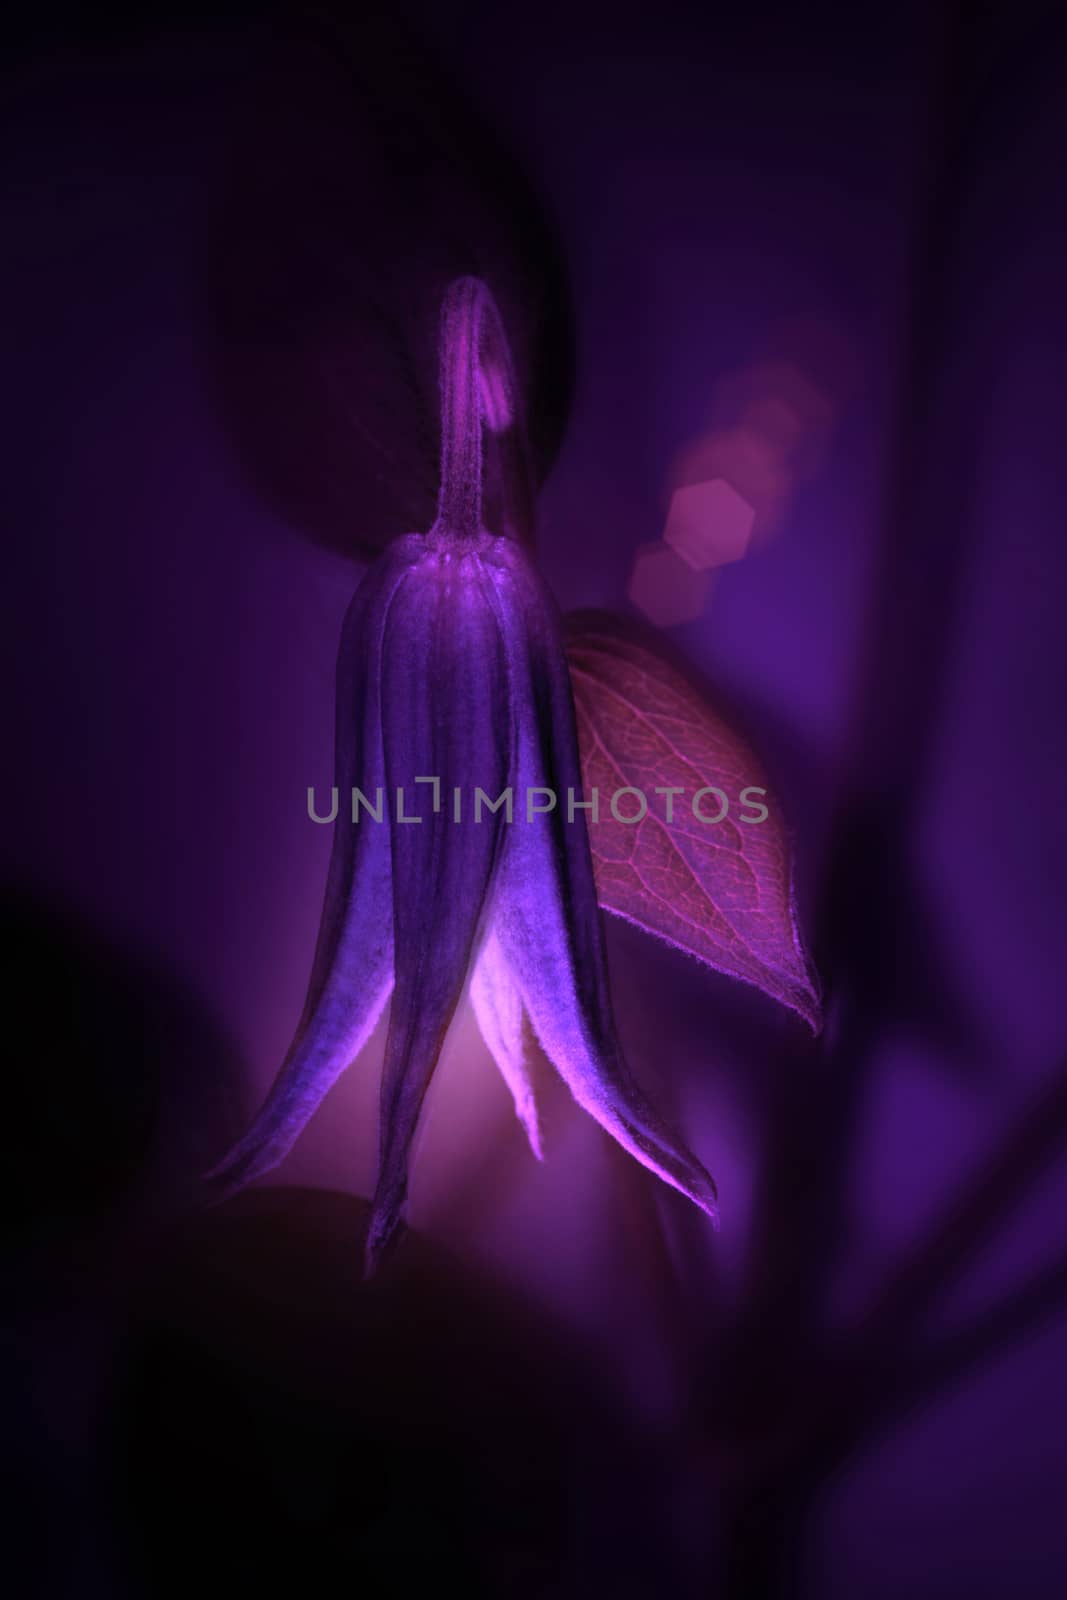 flower on a dark background by A_Karim